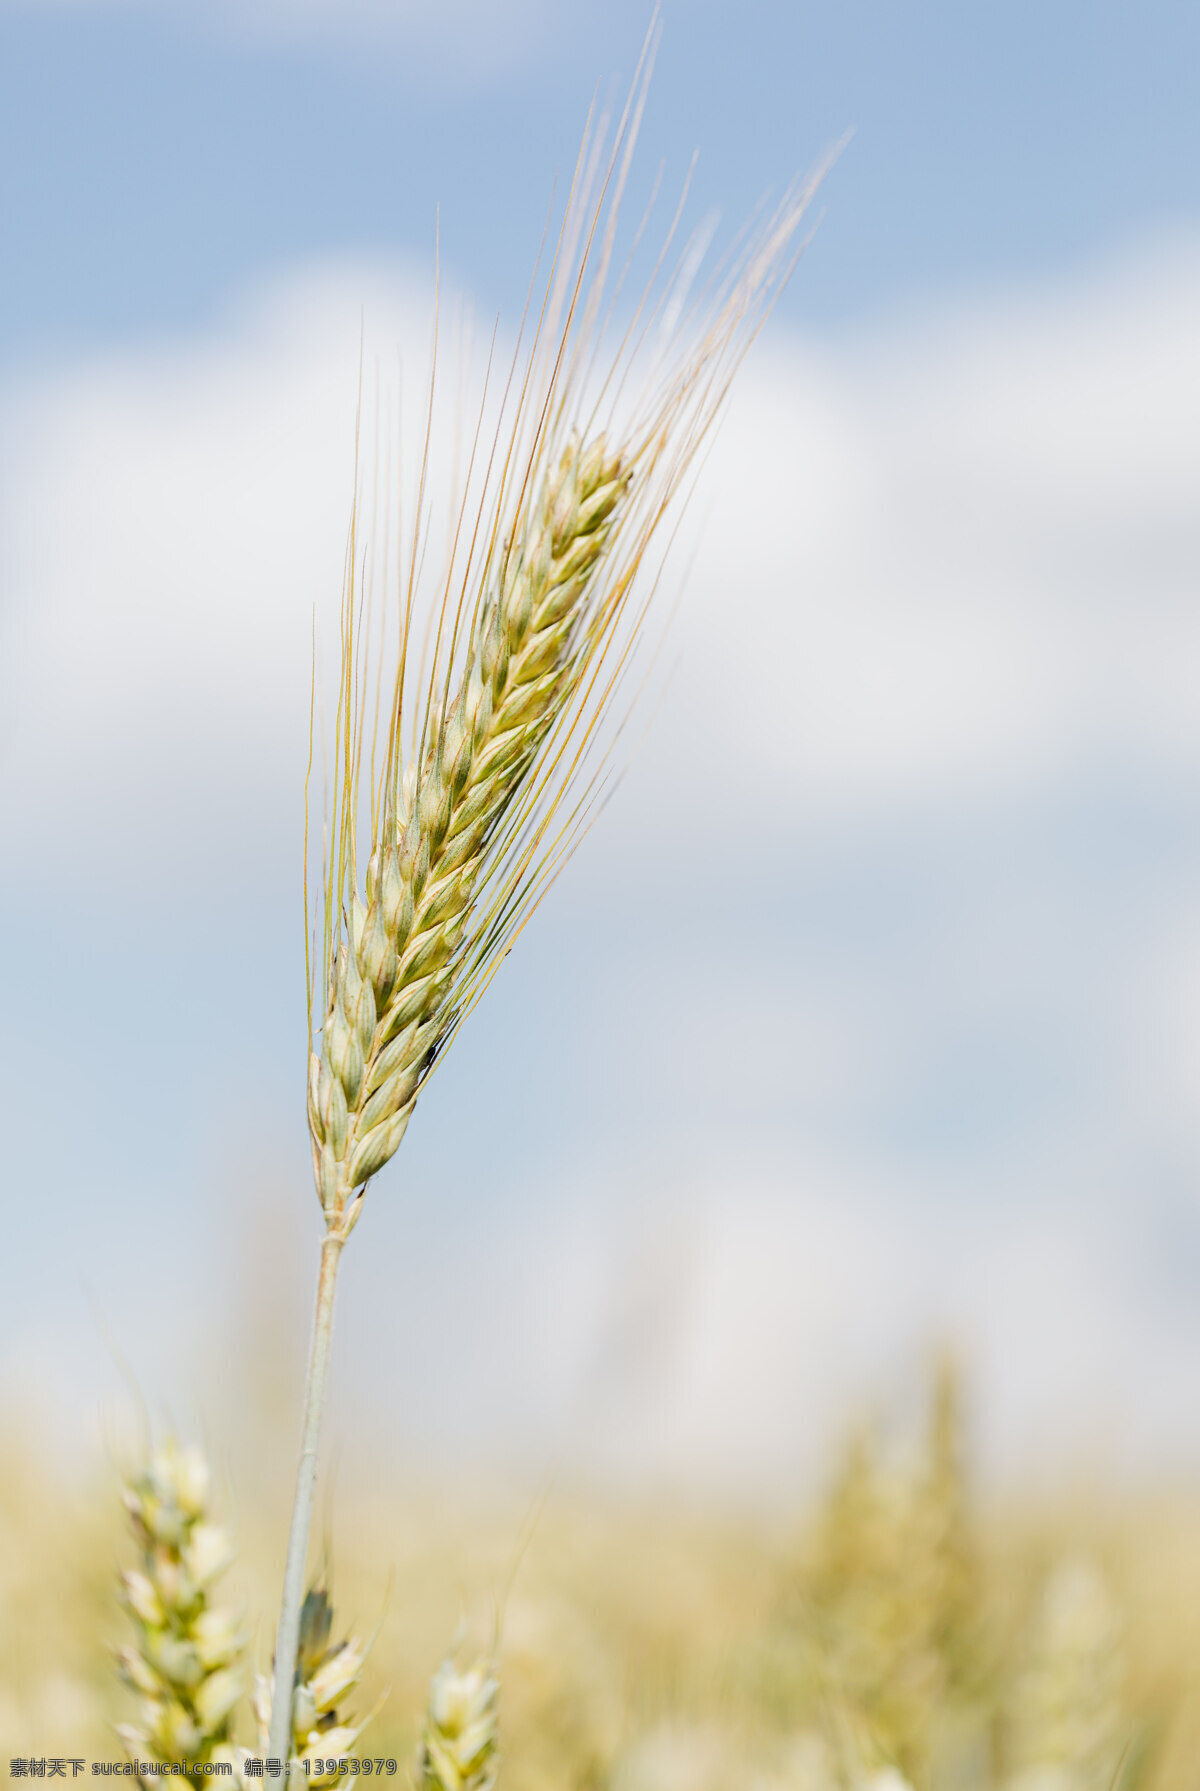 麦穗唯美背景 麦穗 大麦 小麦 农民 庄稼 粮食 农药 大米 吃饭 种地 麦苗 丰收 生物世界 其他生物